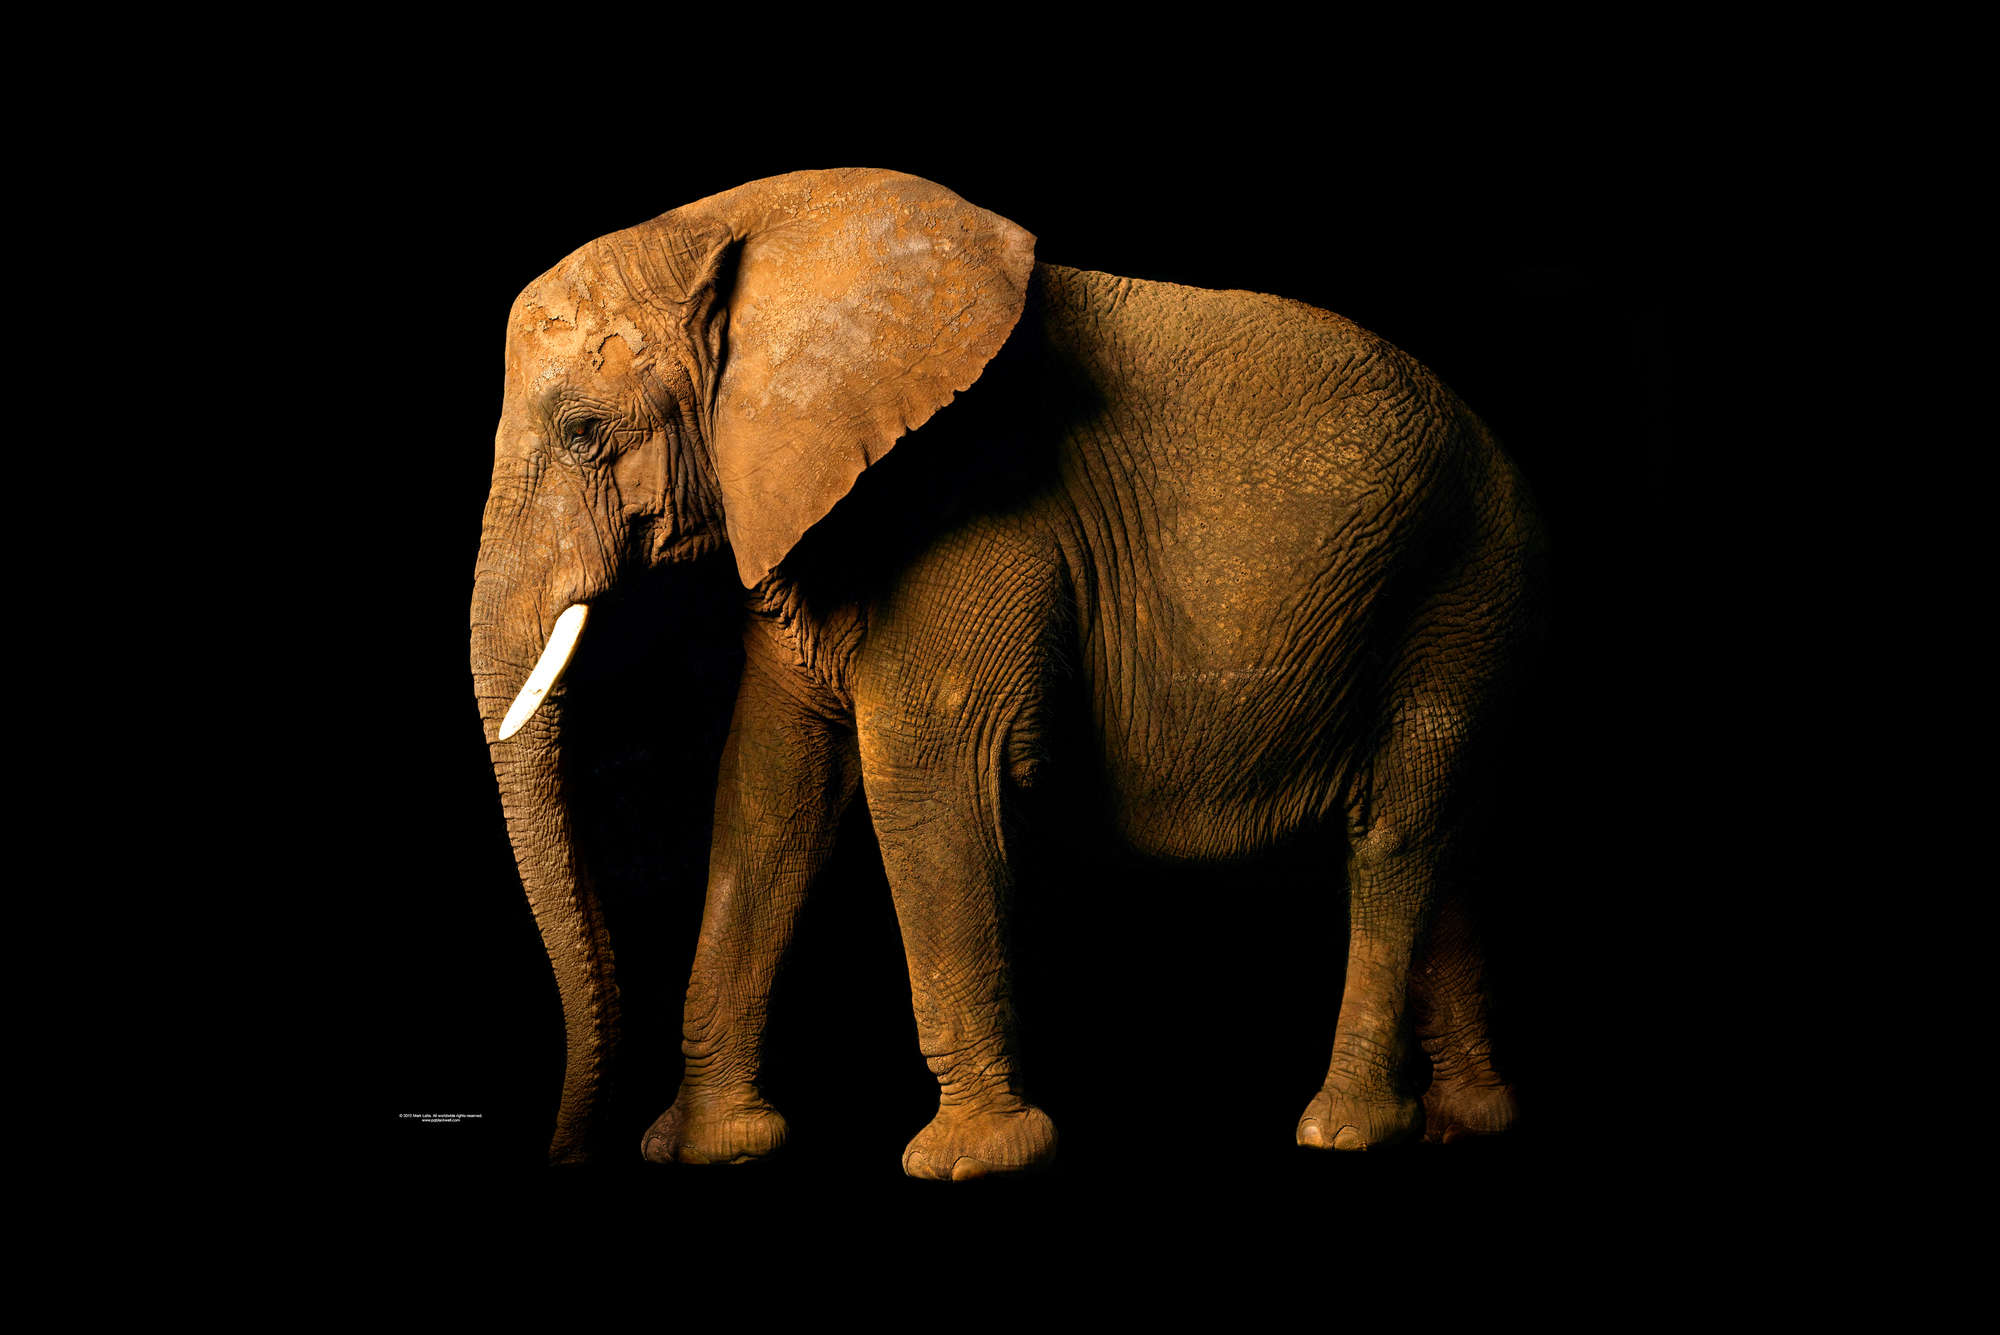             Elefant – Fototapete mit Tier-Portrait
        